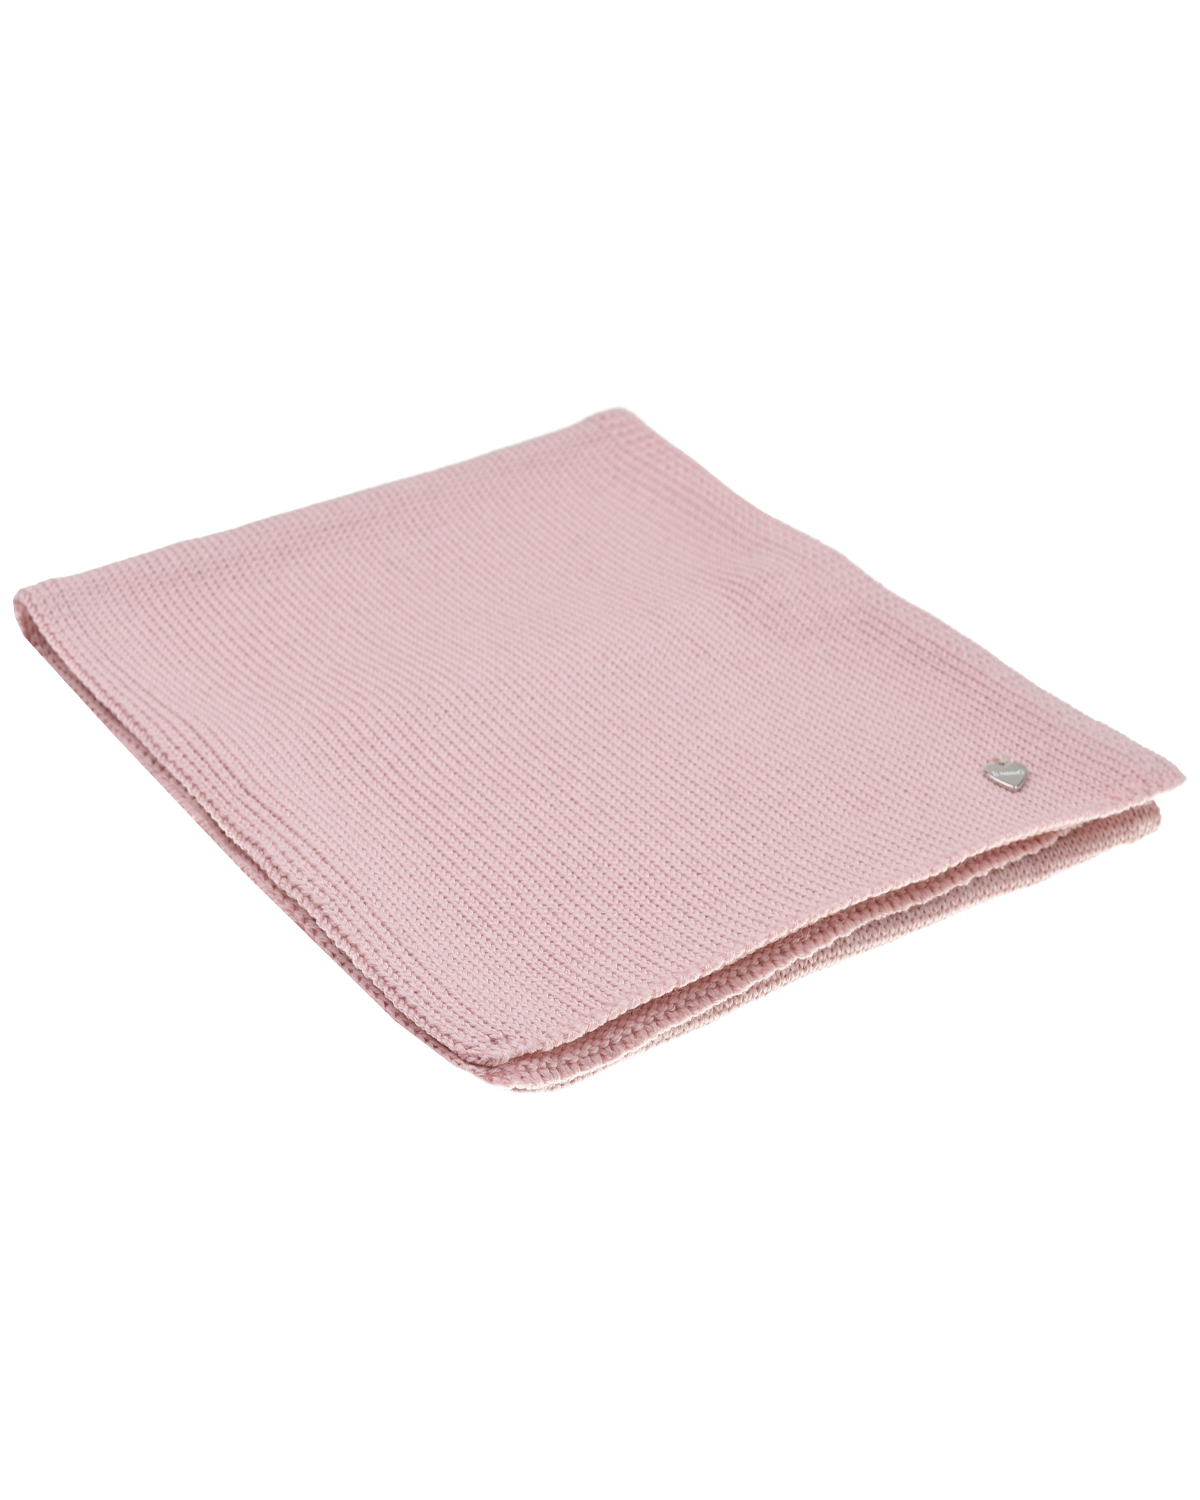 Розовый шарф, 155x25 см Il Trenino детский, размер unica